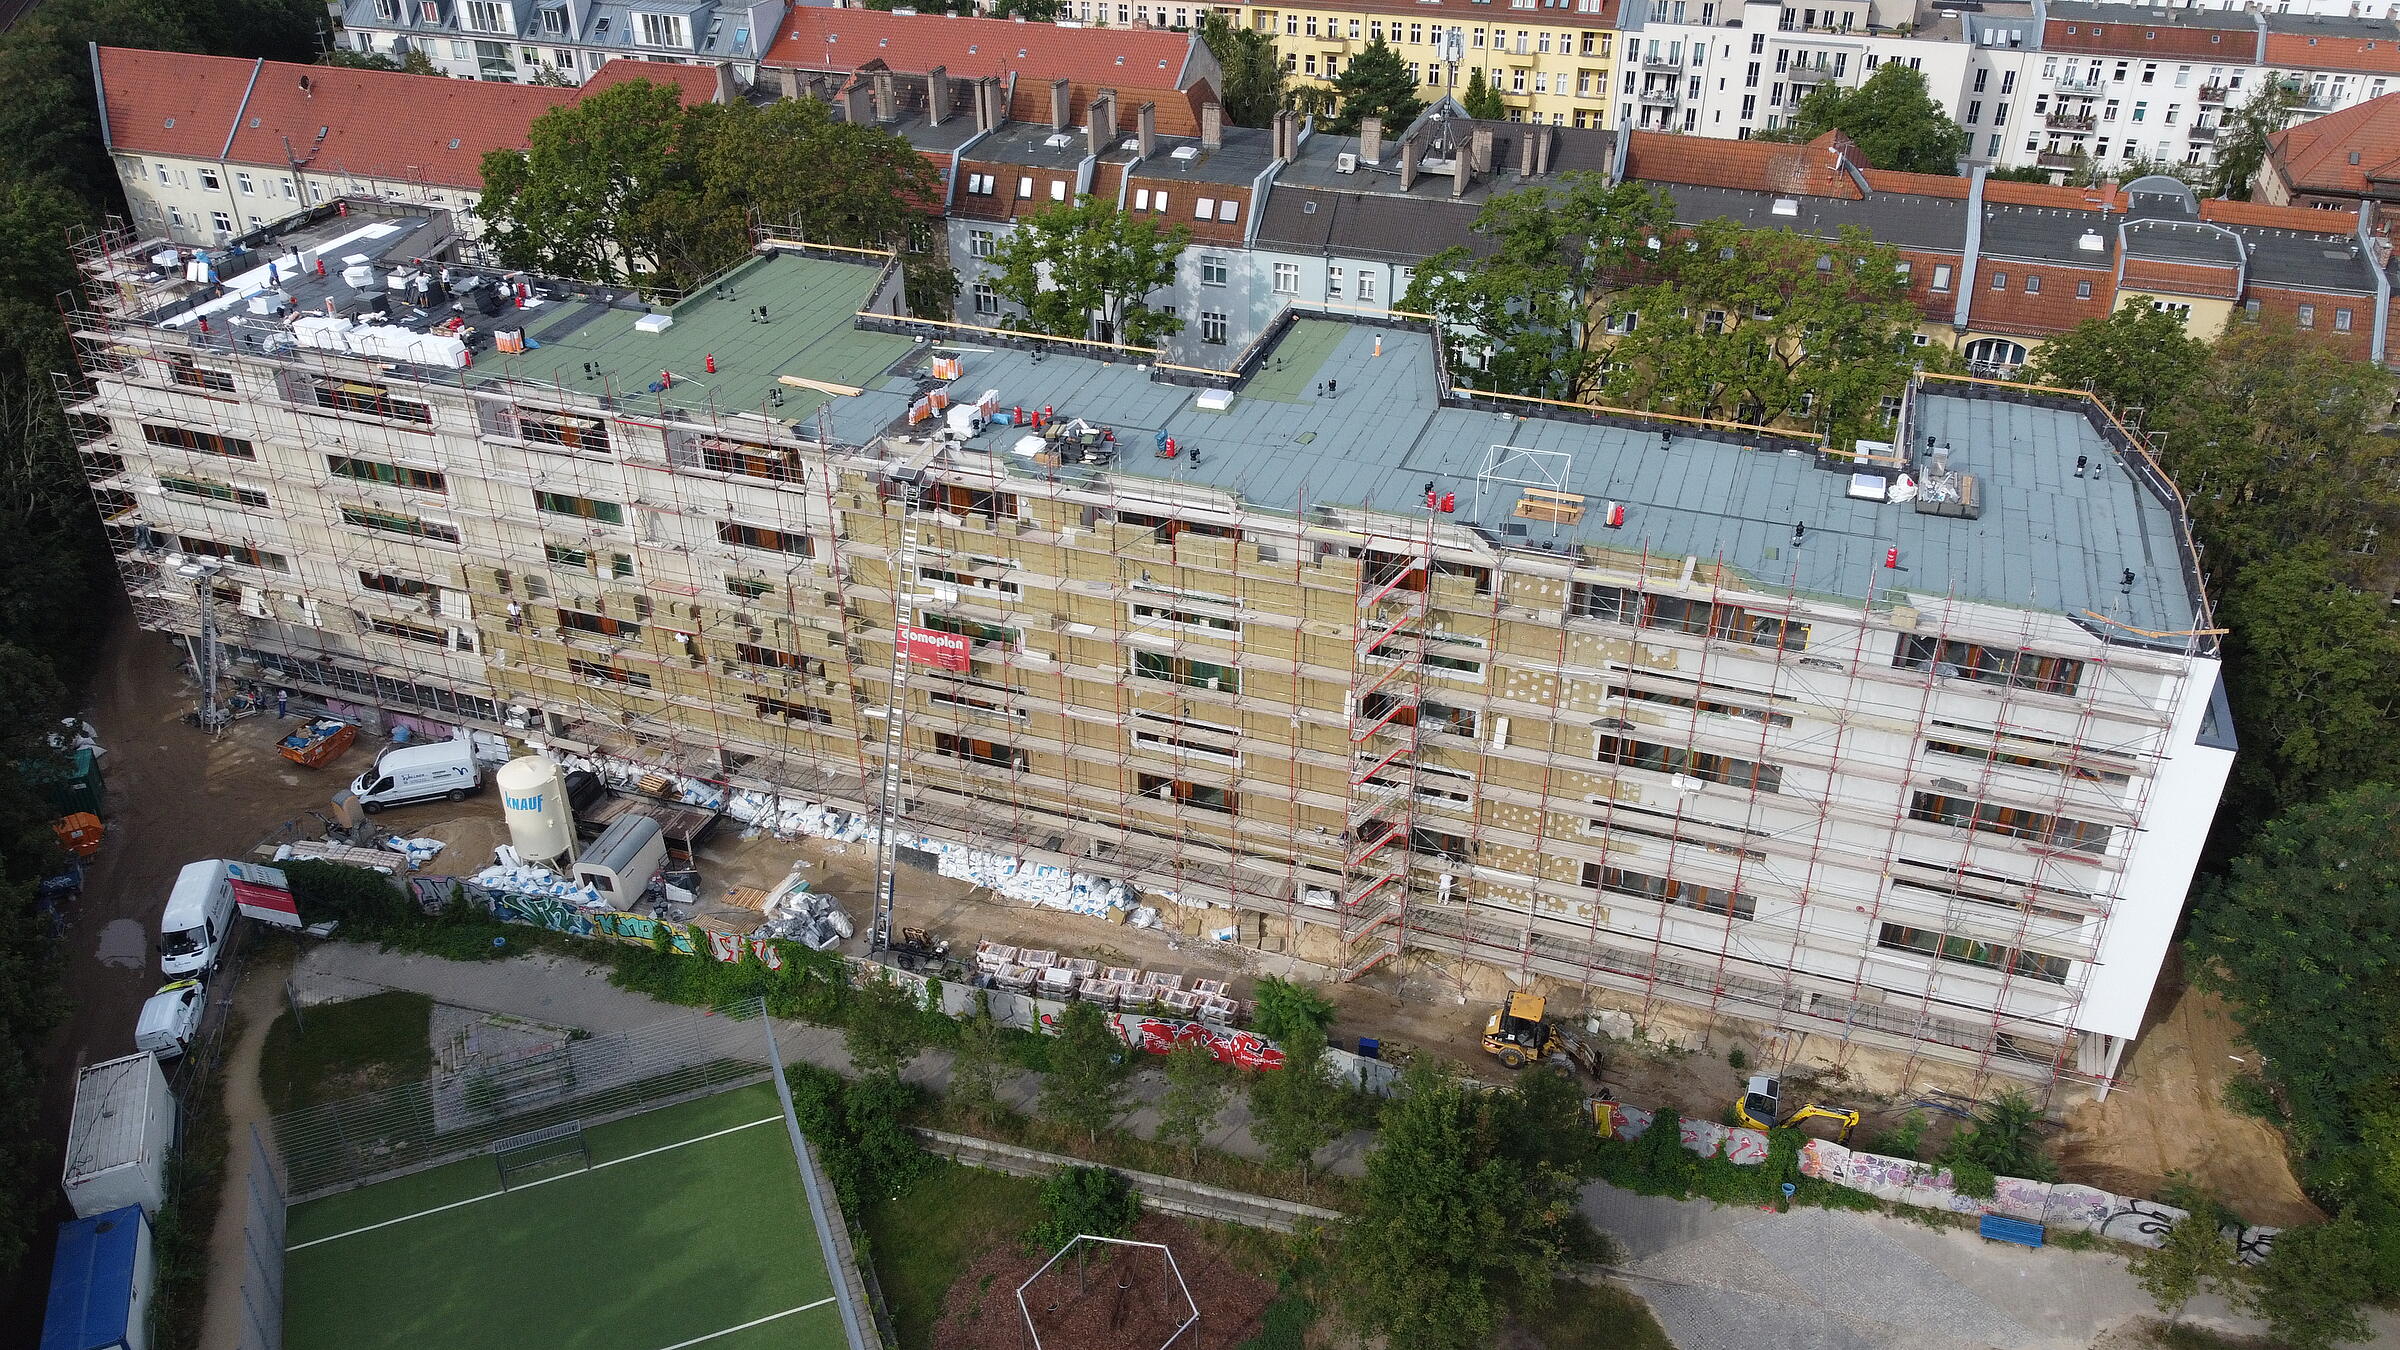 Luftaufnahme zeigt den Neubau in der Mühlenstraße vom Bolzplatz aus gesehen.